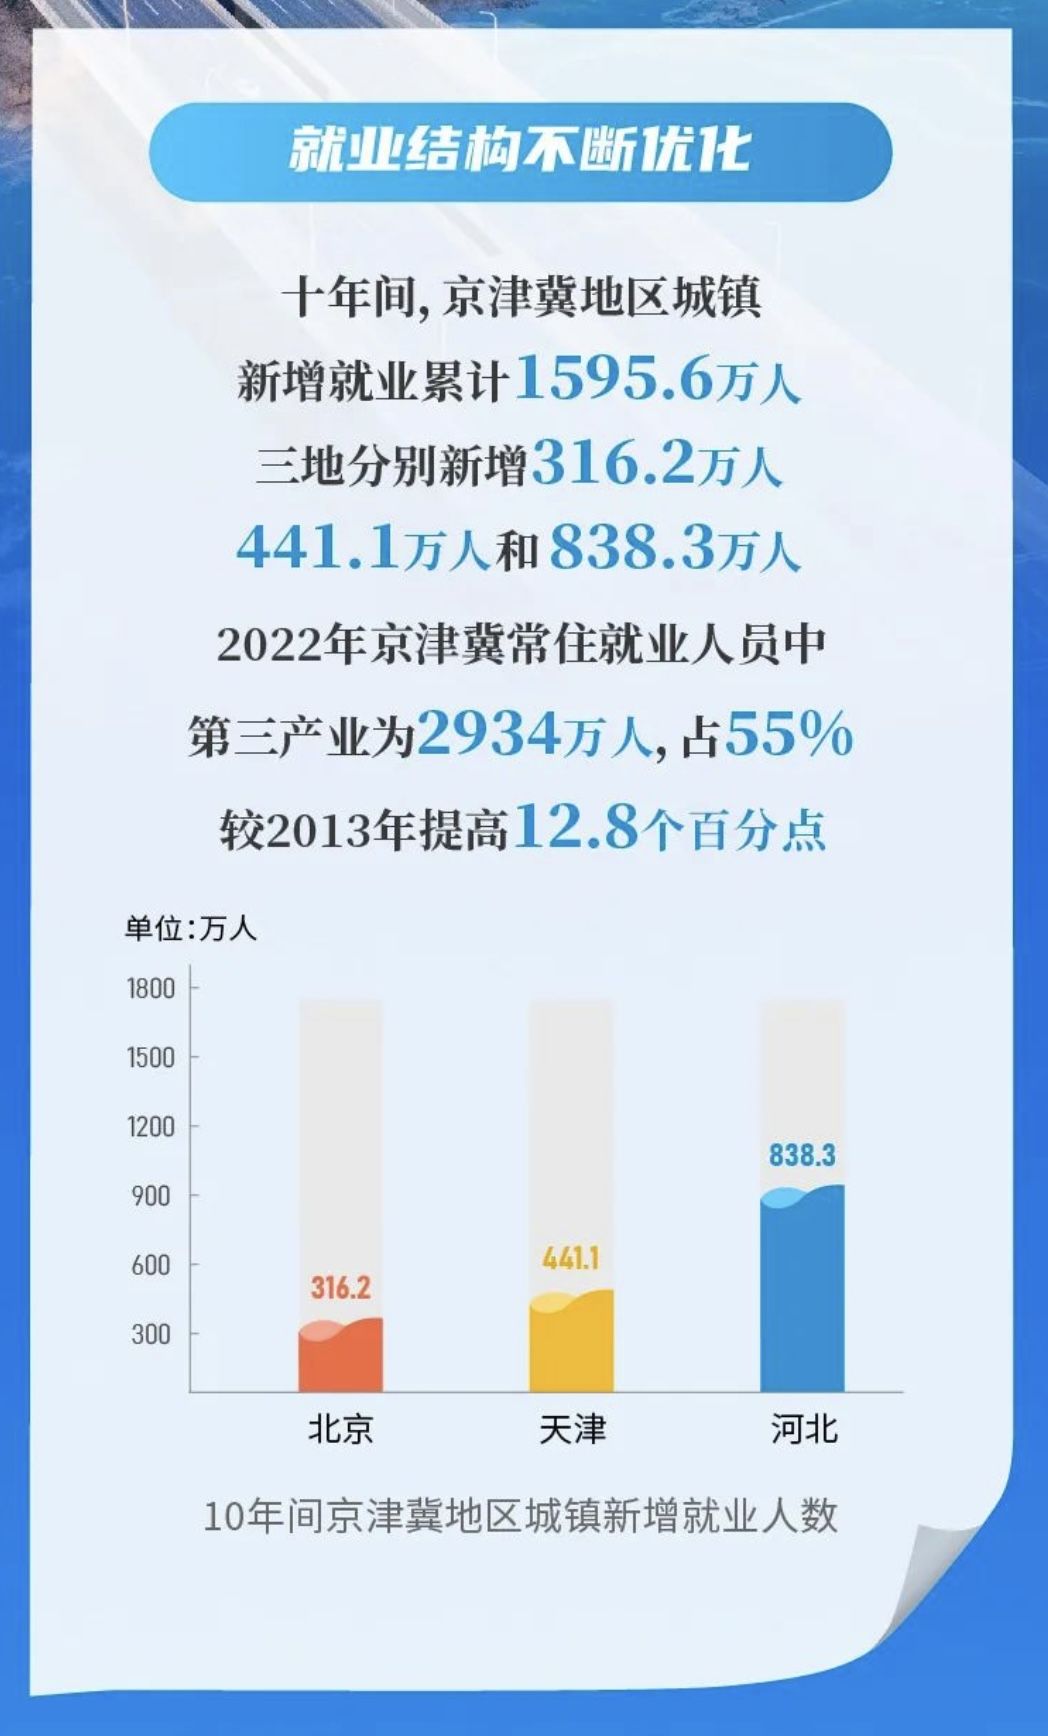 10年間京津冀地區城鎮新增就業人數。 圖片來源：北京市統計局